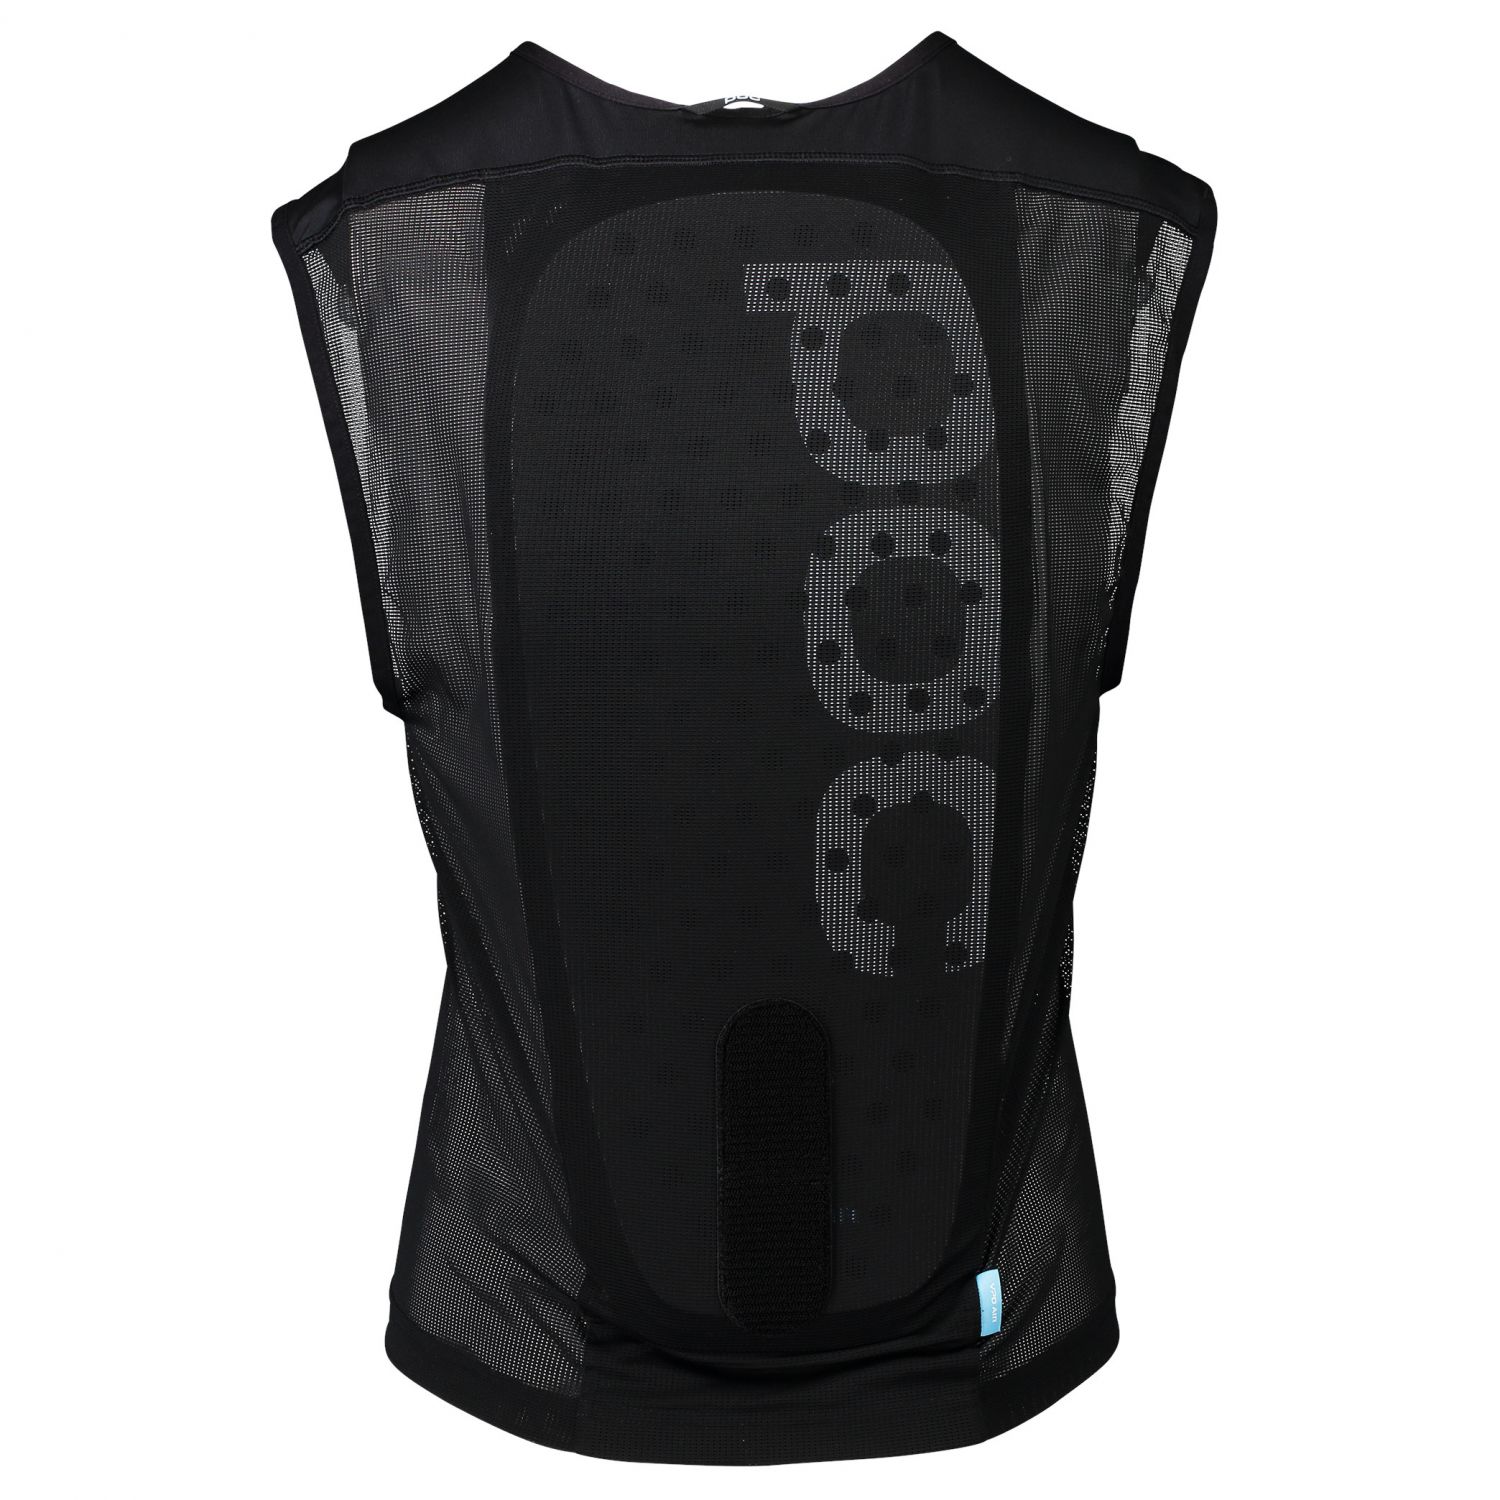 POC Spine VPD Air Vest, protection dorsale, noir